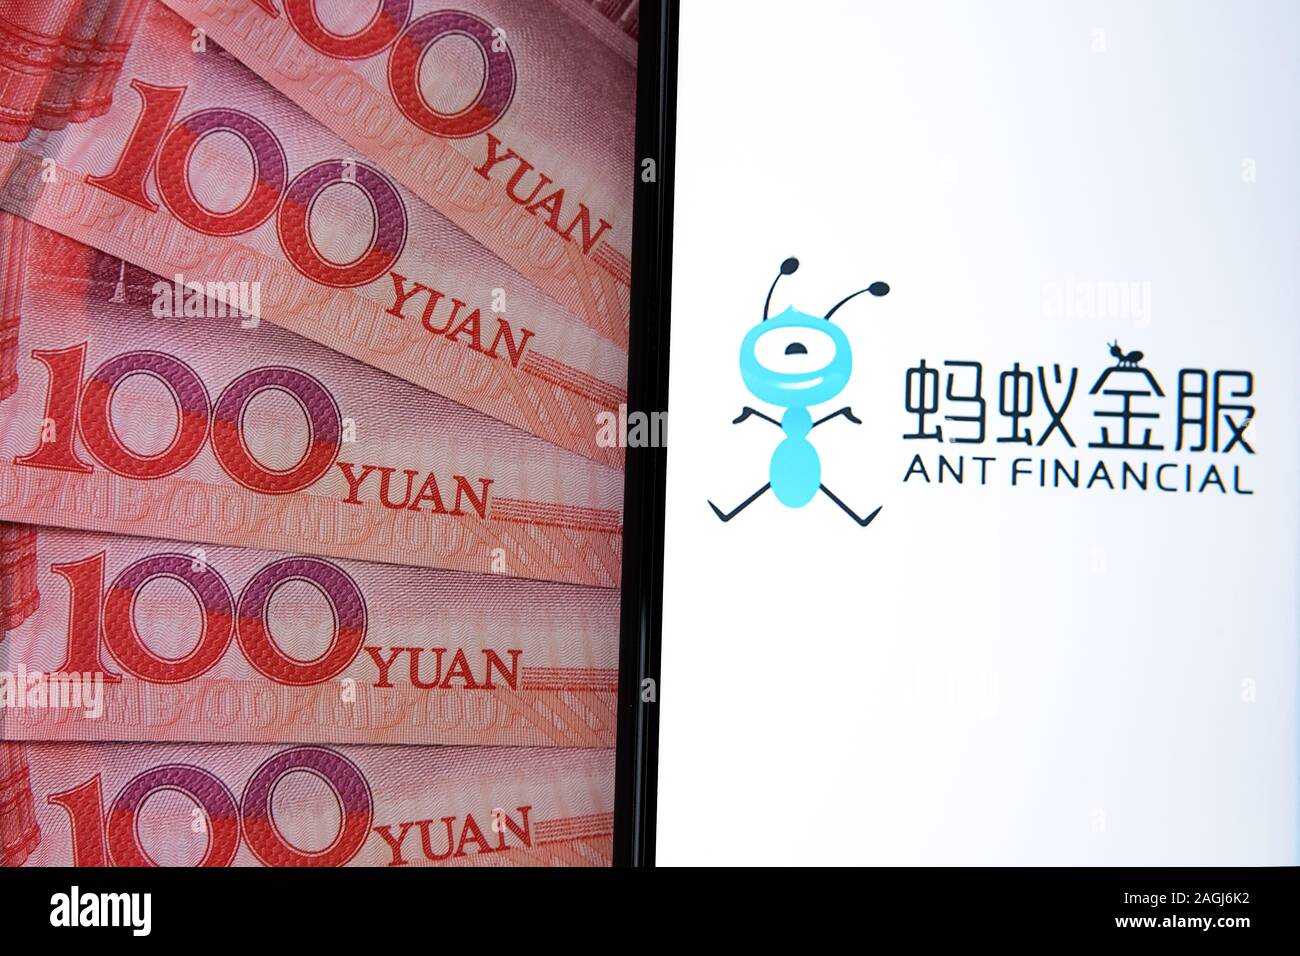 Logo financière Ant sur l'écran du smartphone à côté de billets de 100 yuans chinois. Photo conceptuelle. Banque D'Images